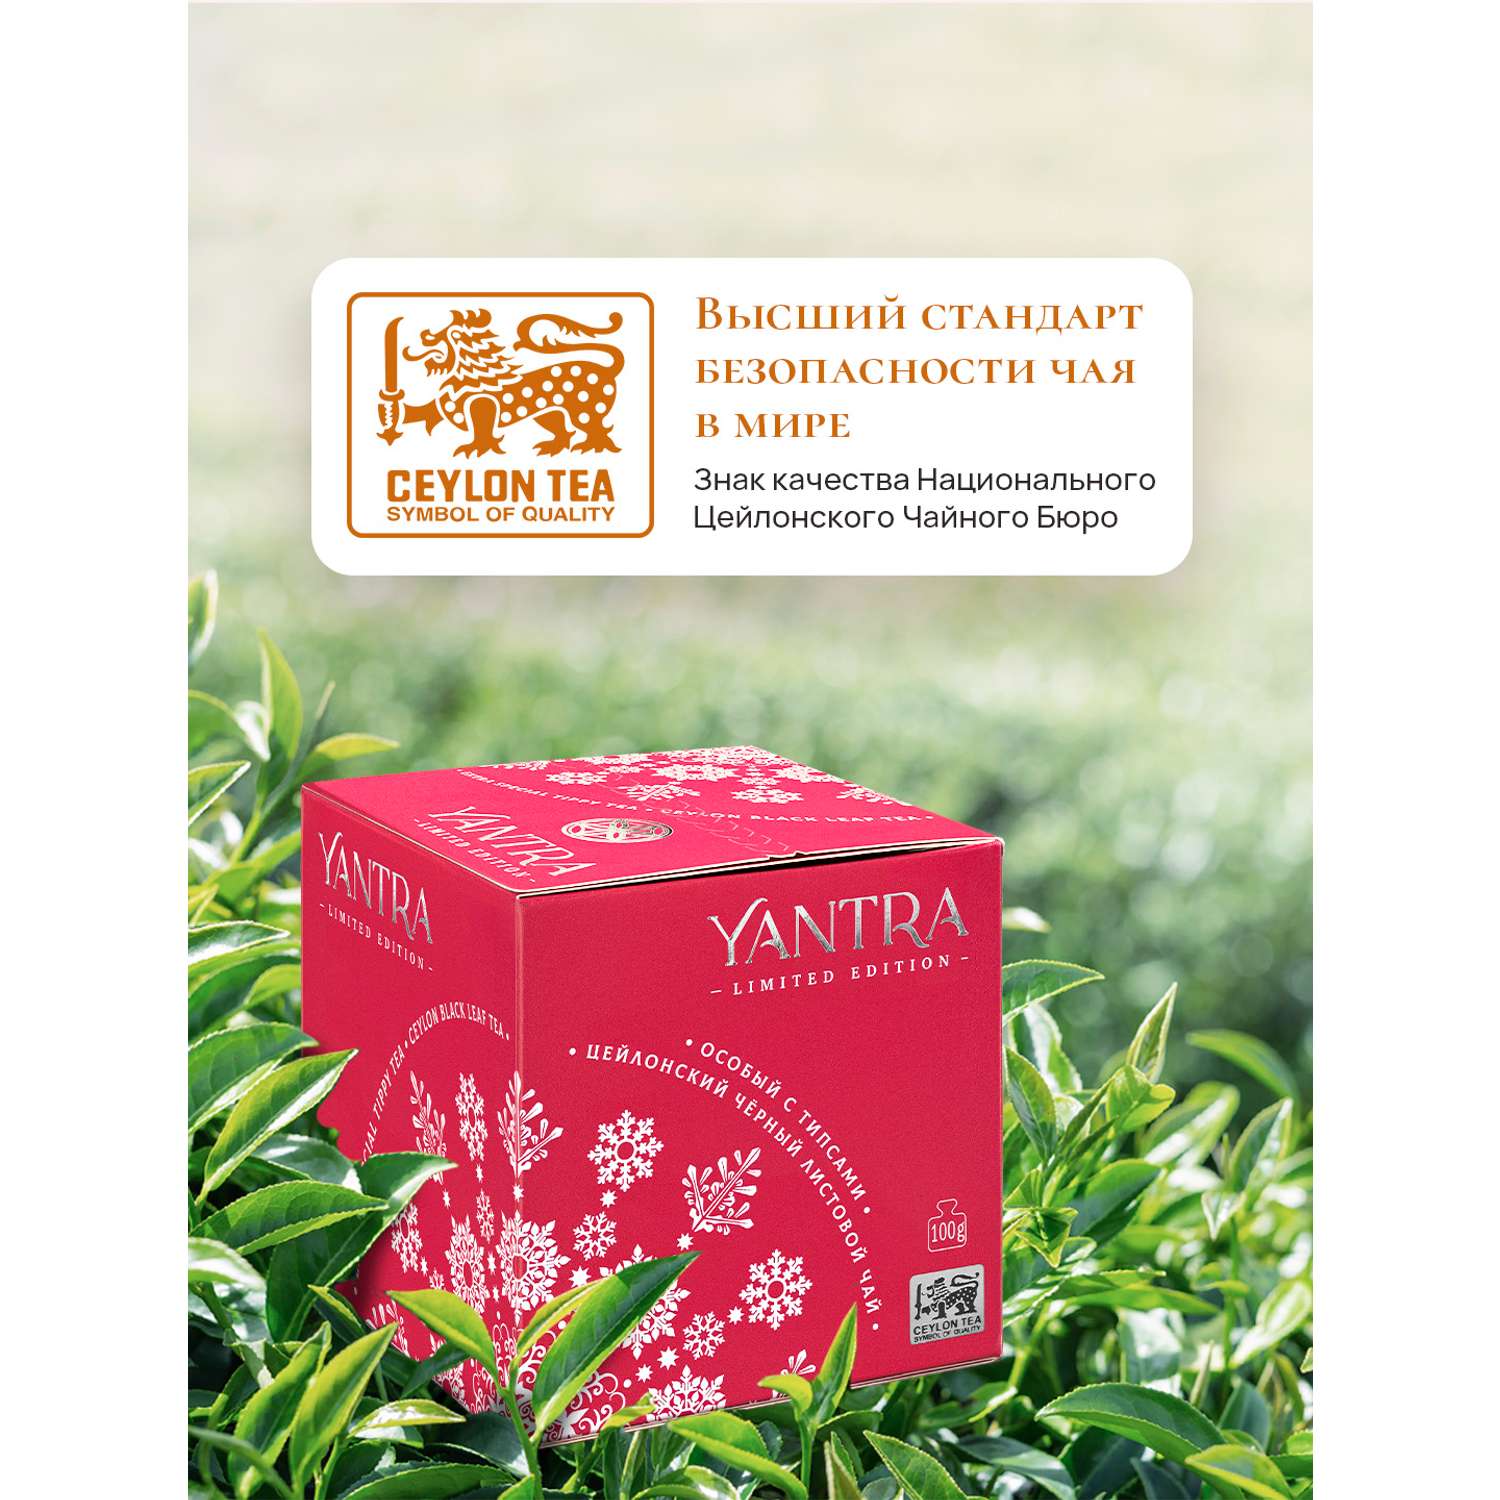 Чай Limited Edition Yantra чёрный лист с типсами стандарт Extra Special Tippy Tea 100 г - фото 2